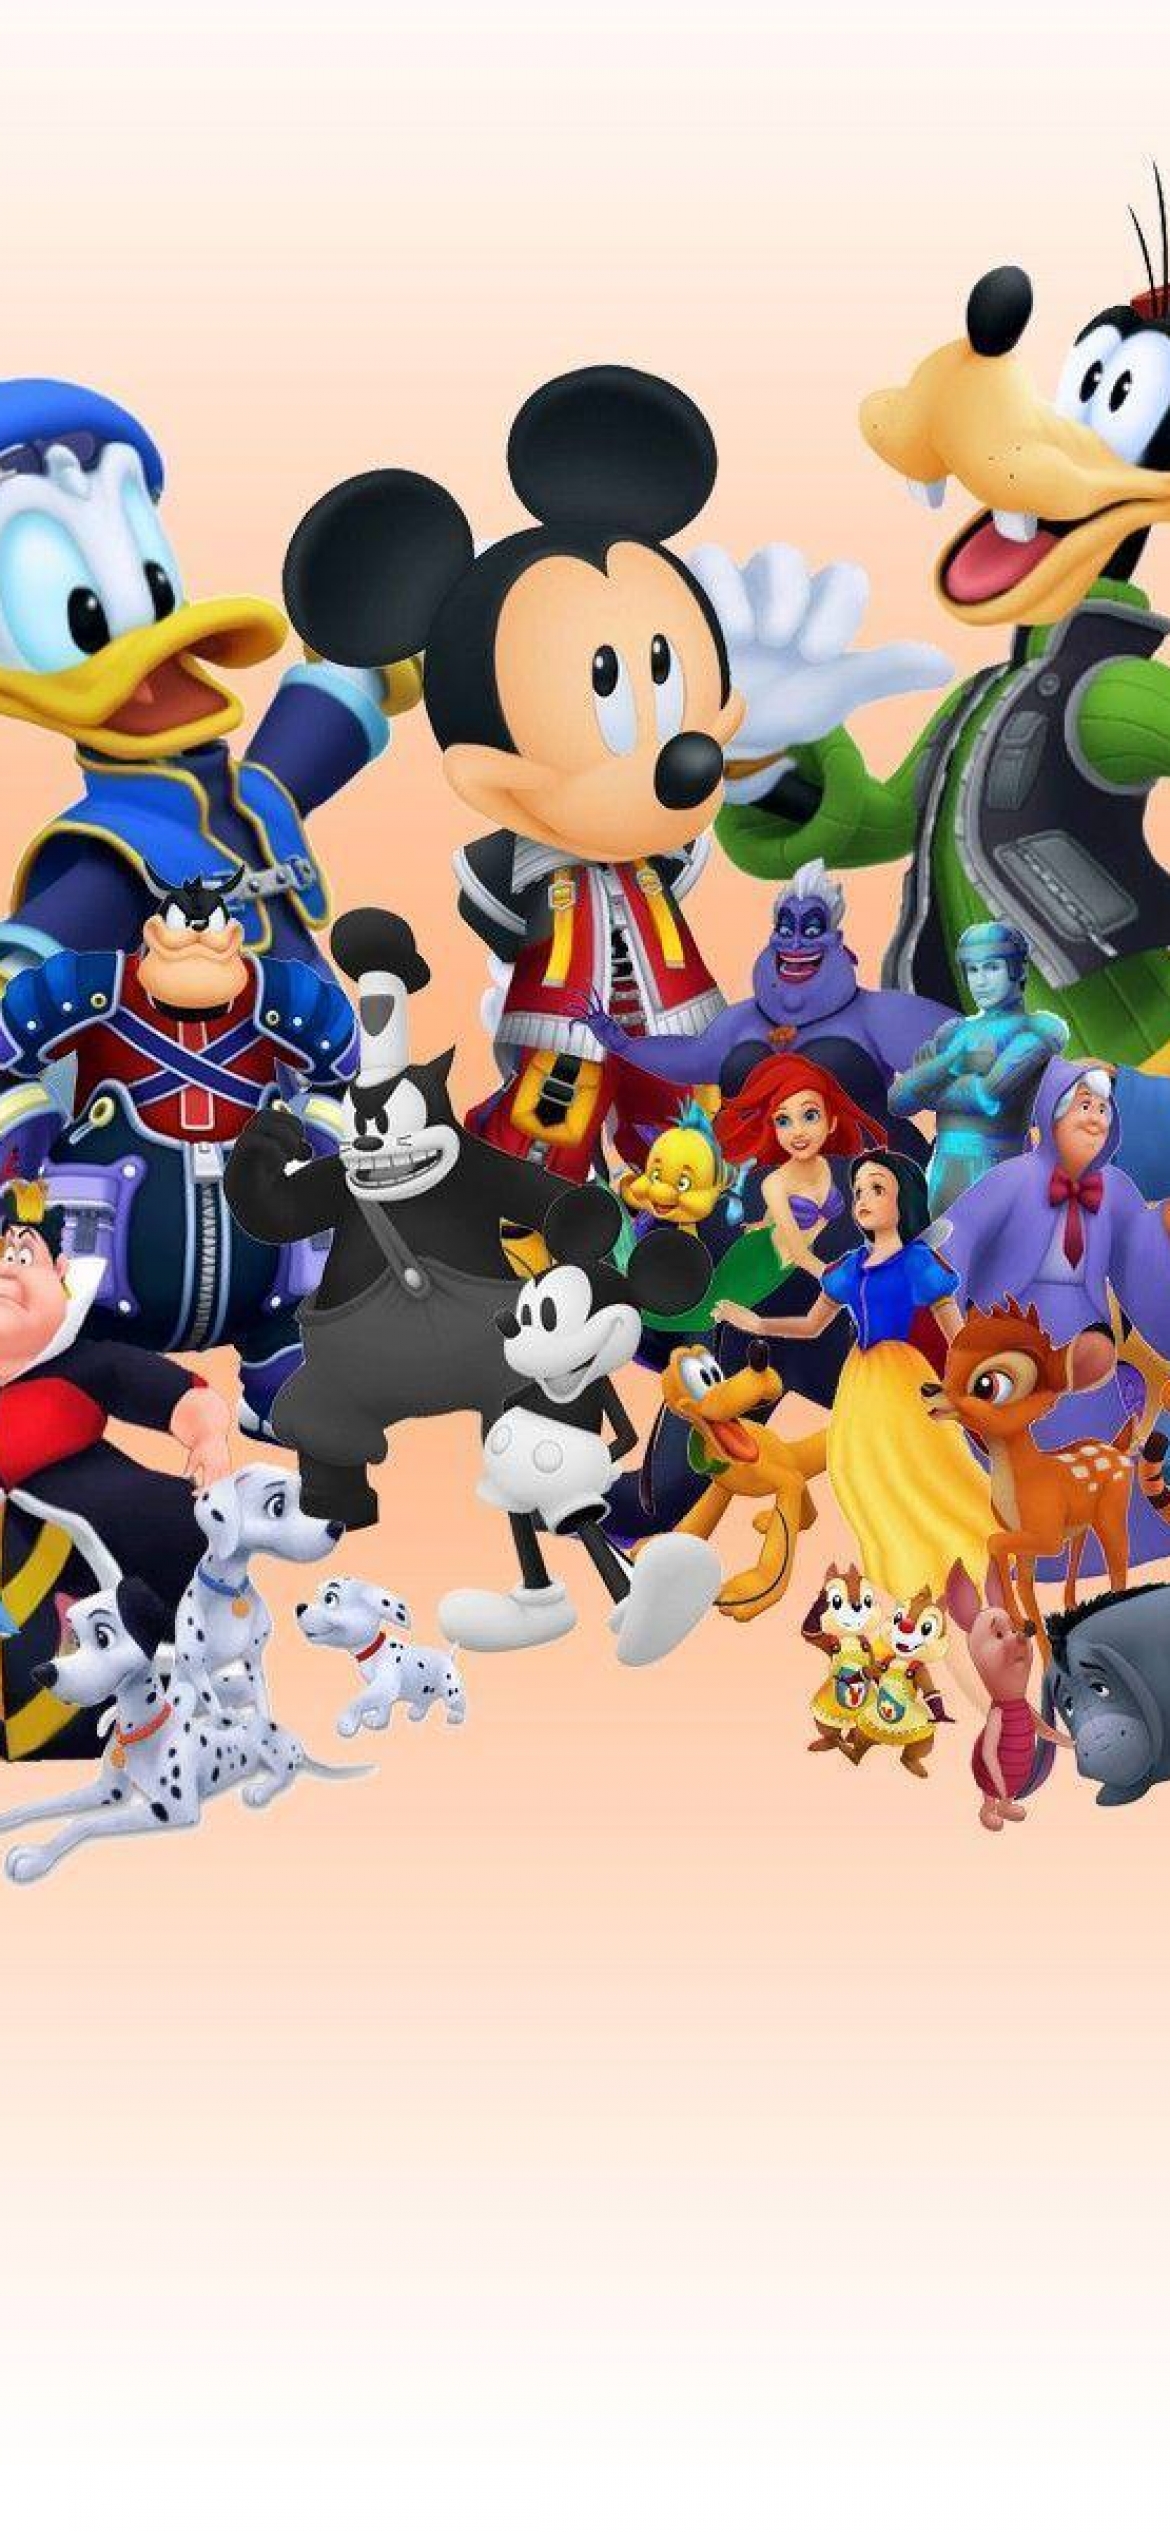 Download Walt Disney Characters Pictures 4K 2020 Wallpaper 